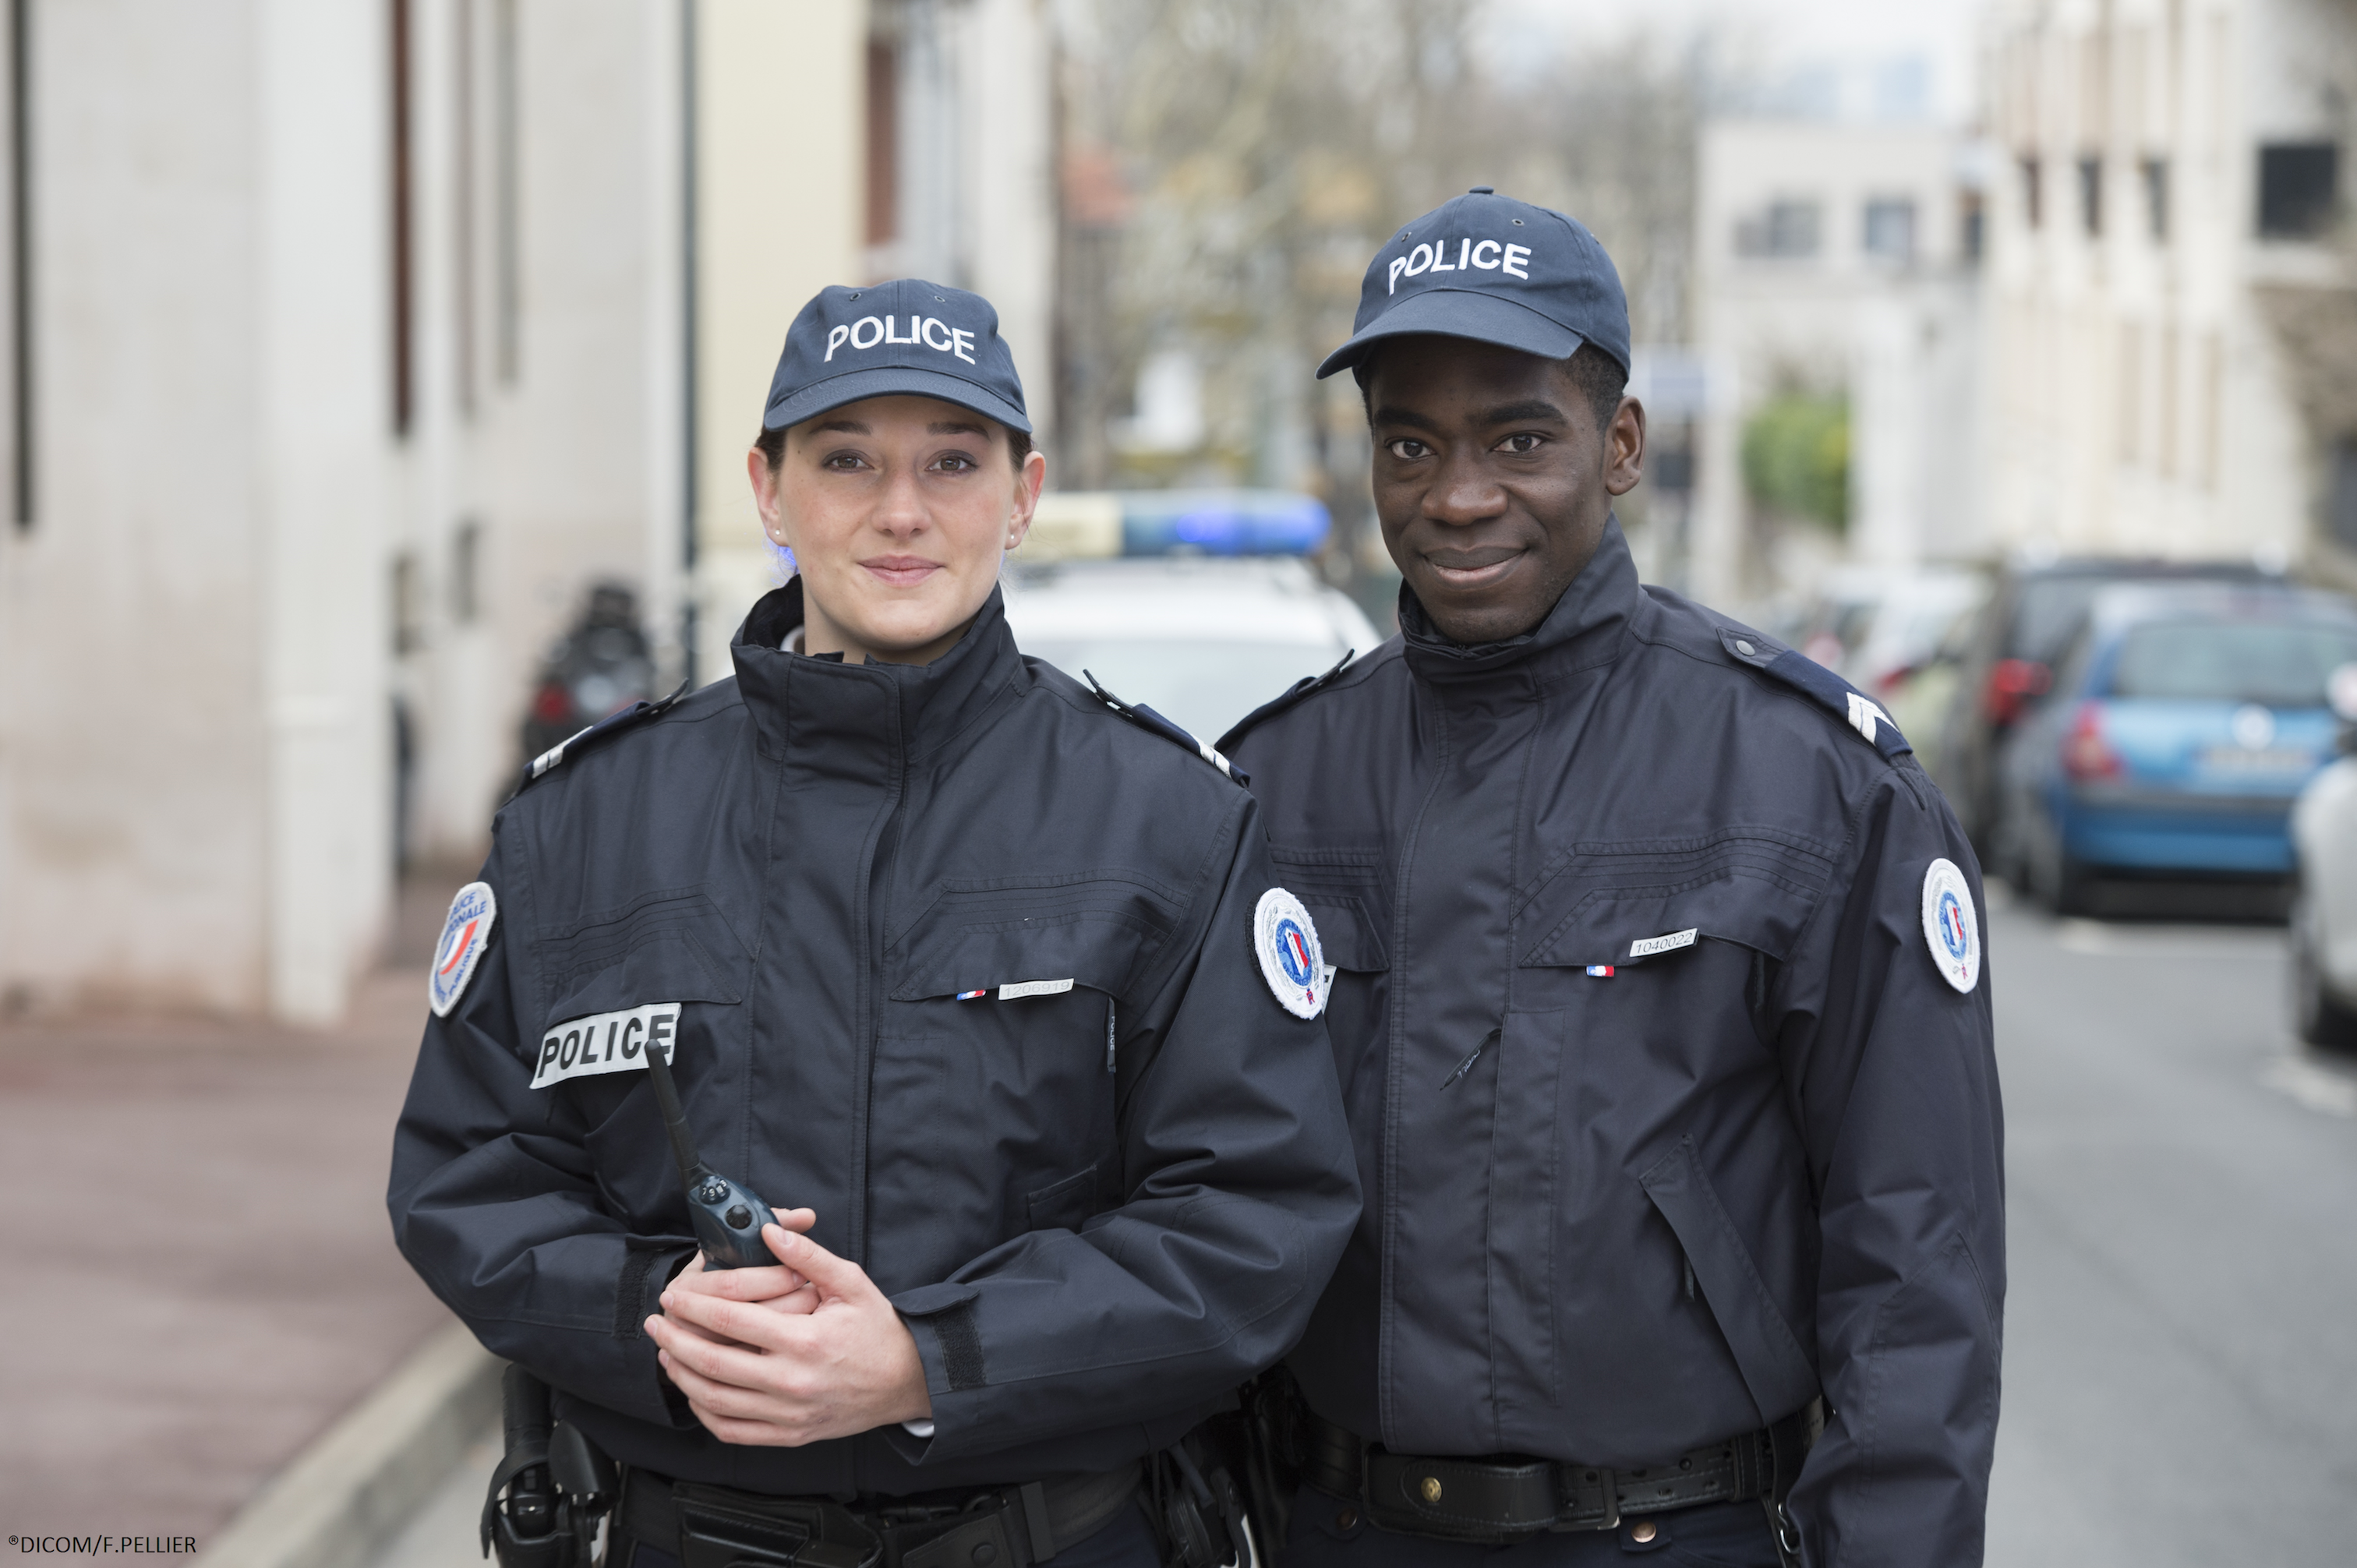 Grades et carrières - Devenir gendarme avec France Enseignement